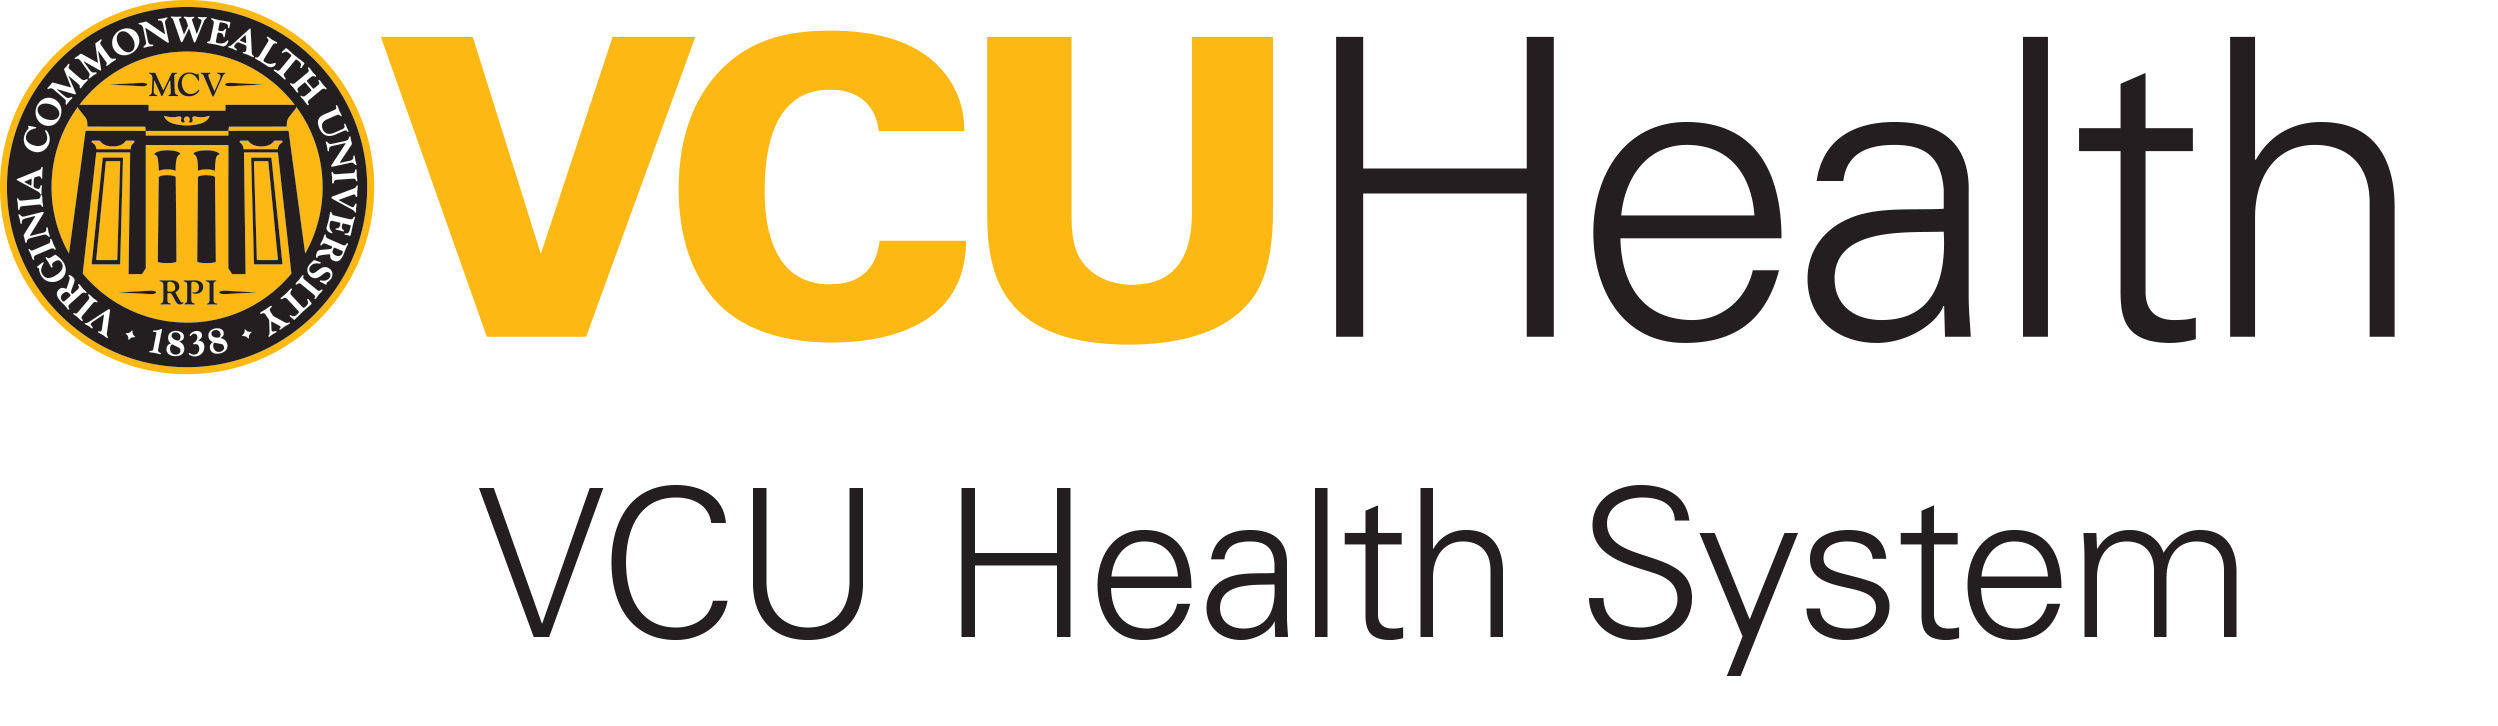 VCU Medical Center Logo - Career Search | VCU Health